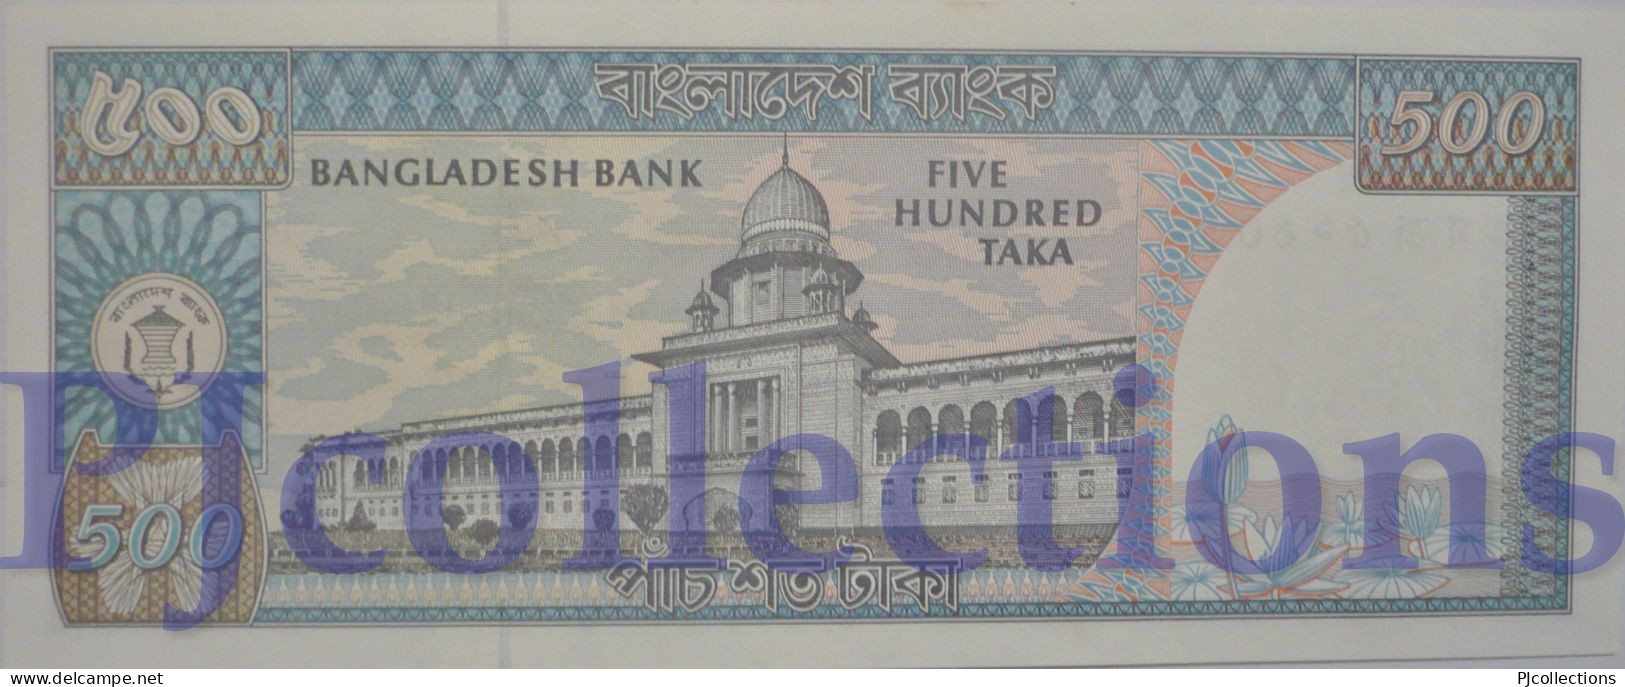 BANGLADESH 500 TAKA 1982 PICK 30b UNC W/PINHOLES - Bangladesh